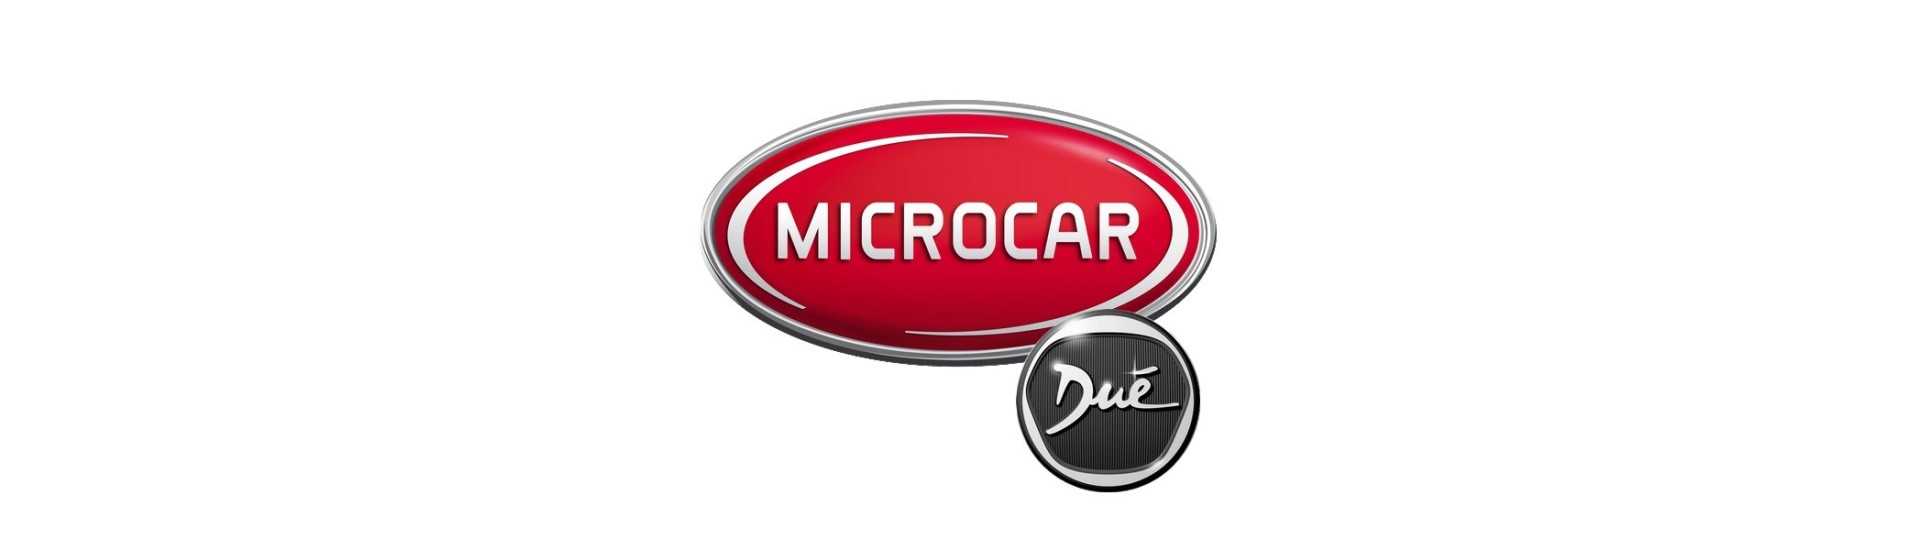 Joint lèche vitree al mejor precio coche sin permiso Microcar Dué